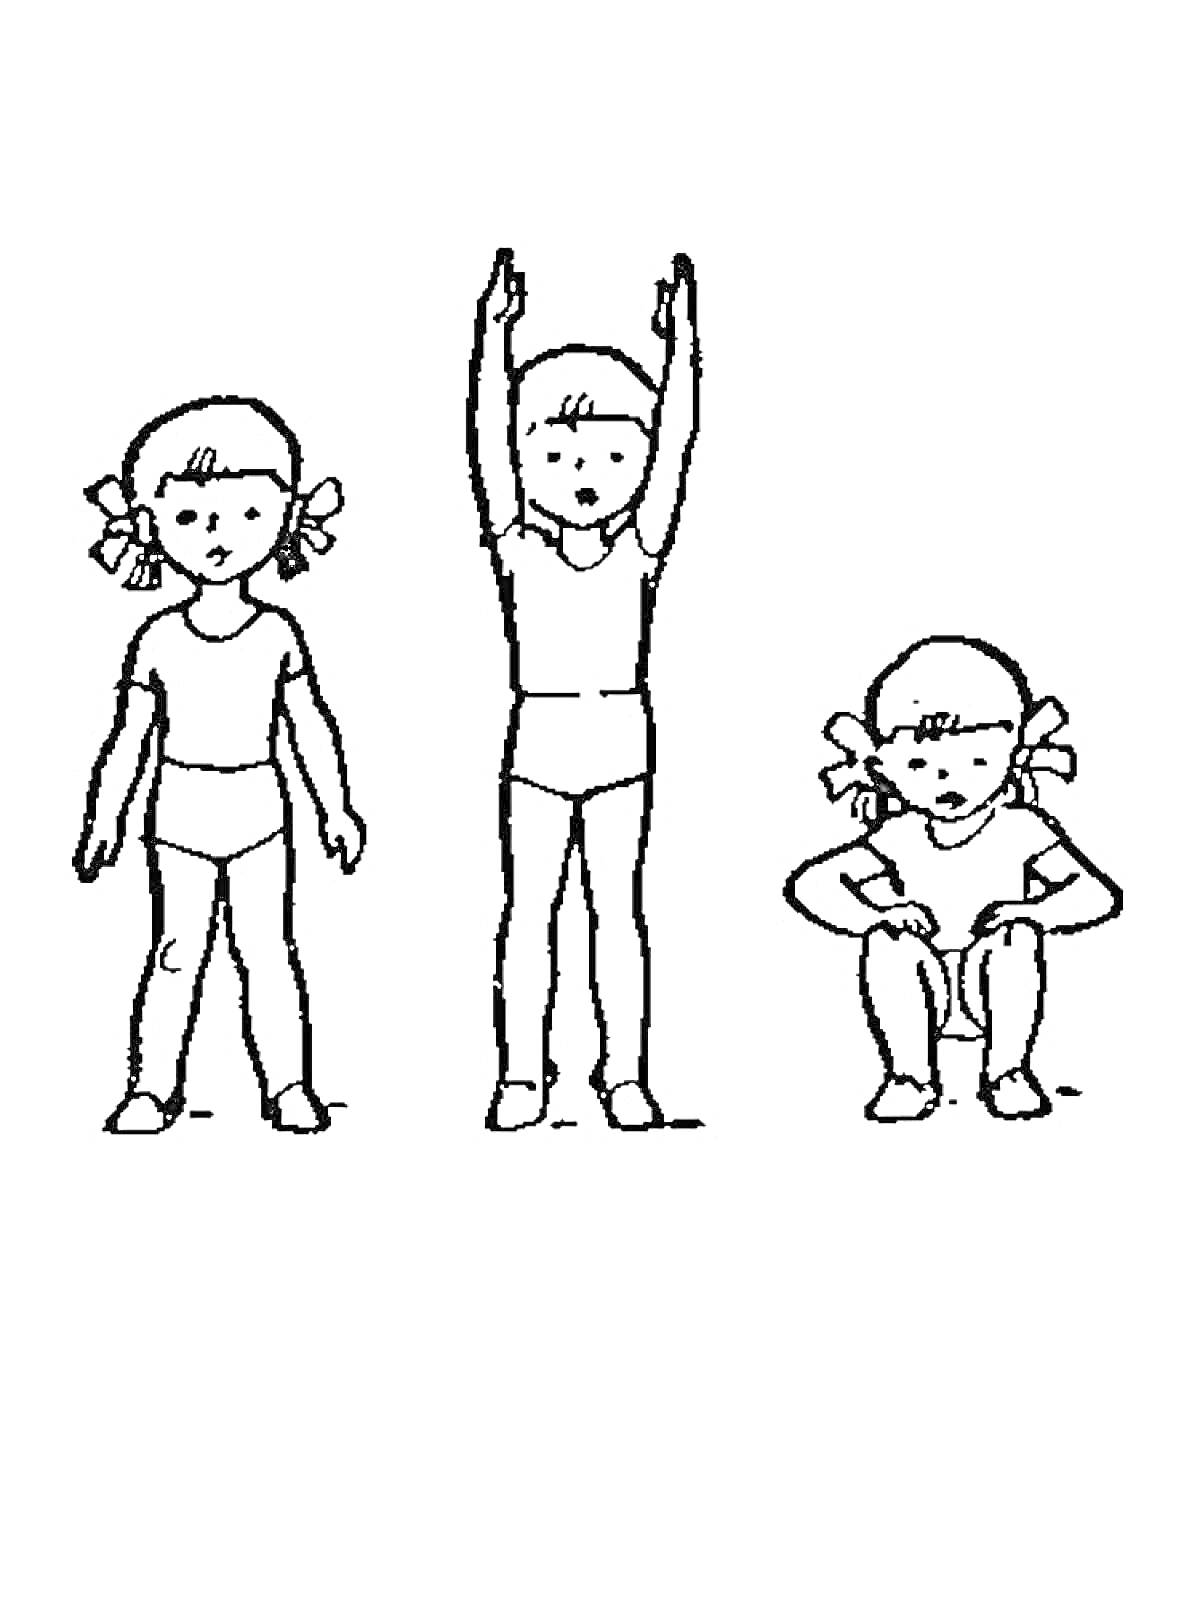 Девочка в спортивной одежде выполняет три различных упражнения: в стойке, с поднятыми руками, приседание.